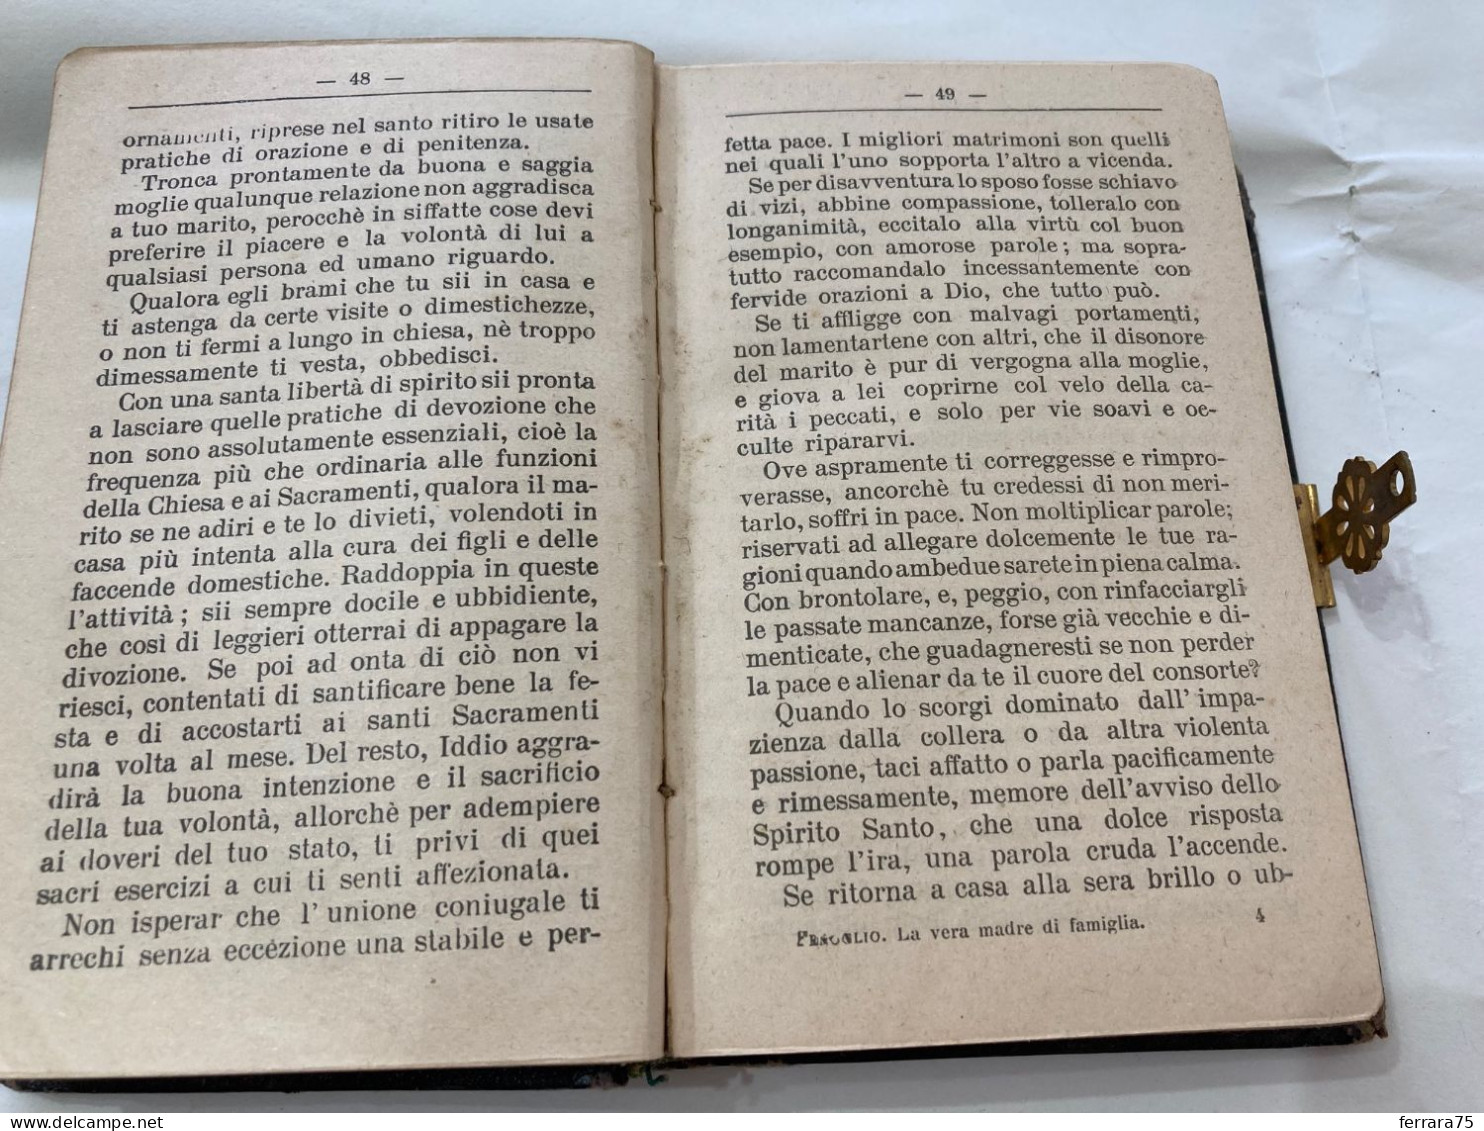 LA VERA MADRE DI FAMIGLIA operetta compilata Giambattista FENOGLIO Torino 1897